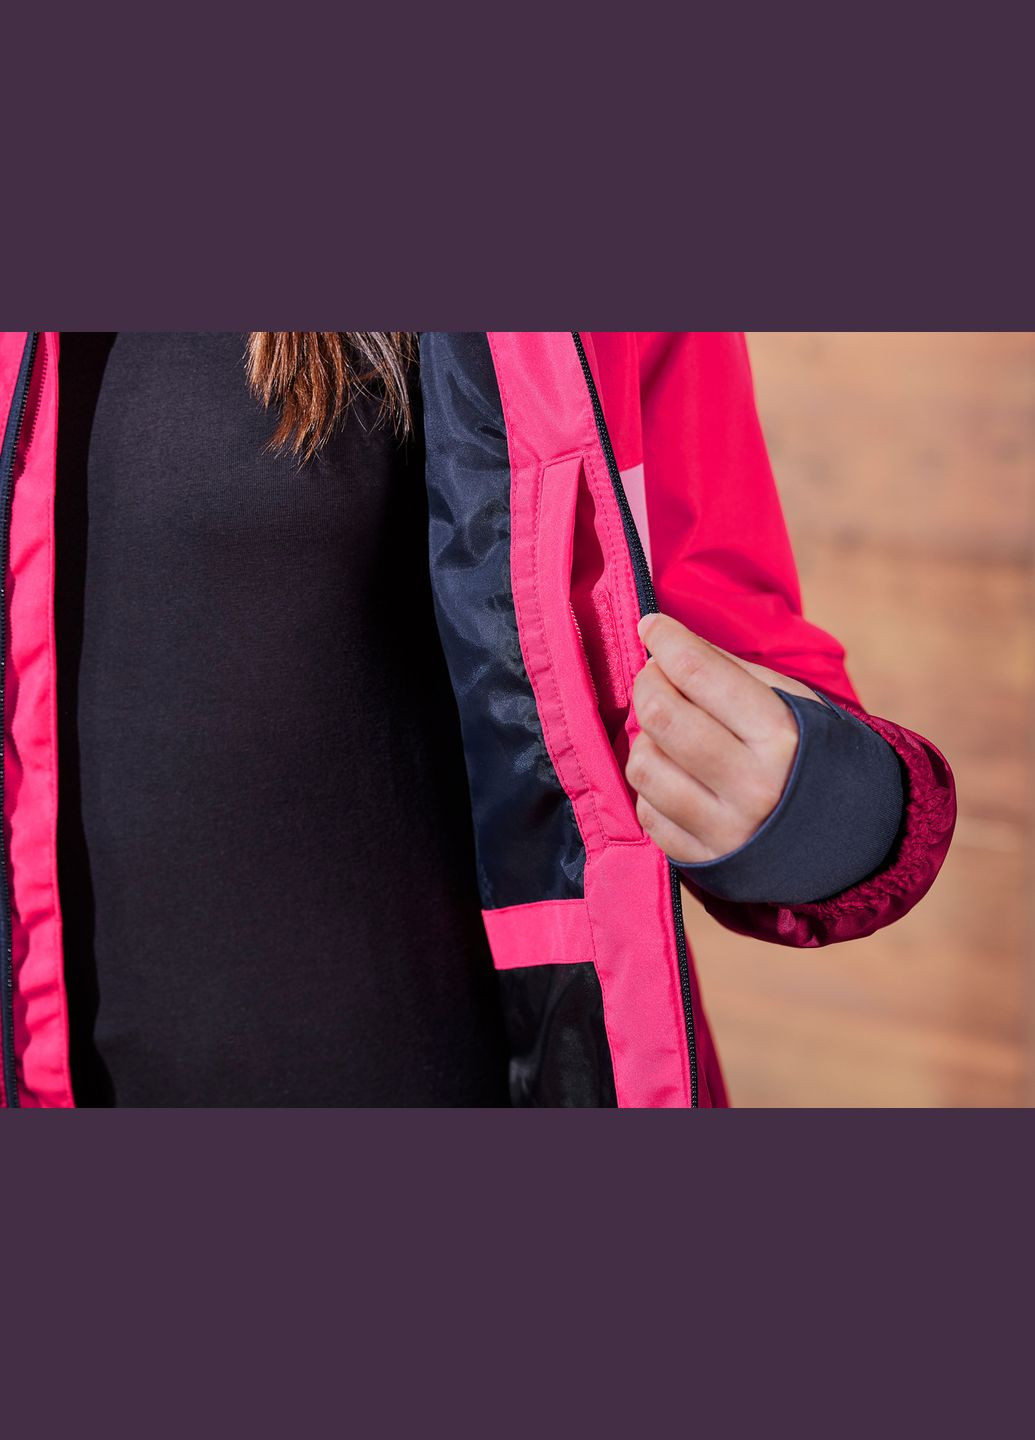 Розовая демисезонная термо-куртка мембранная (3000мм) для девочки thermolite® ecomade 427321 куртка-лайнер Crivit